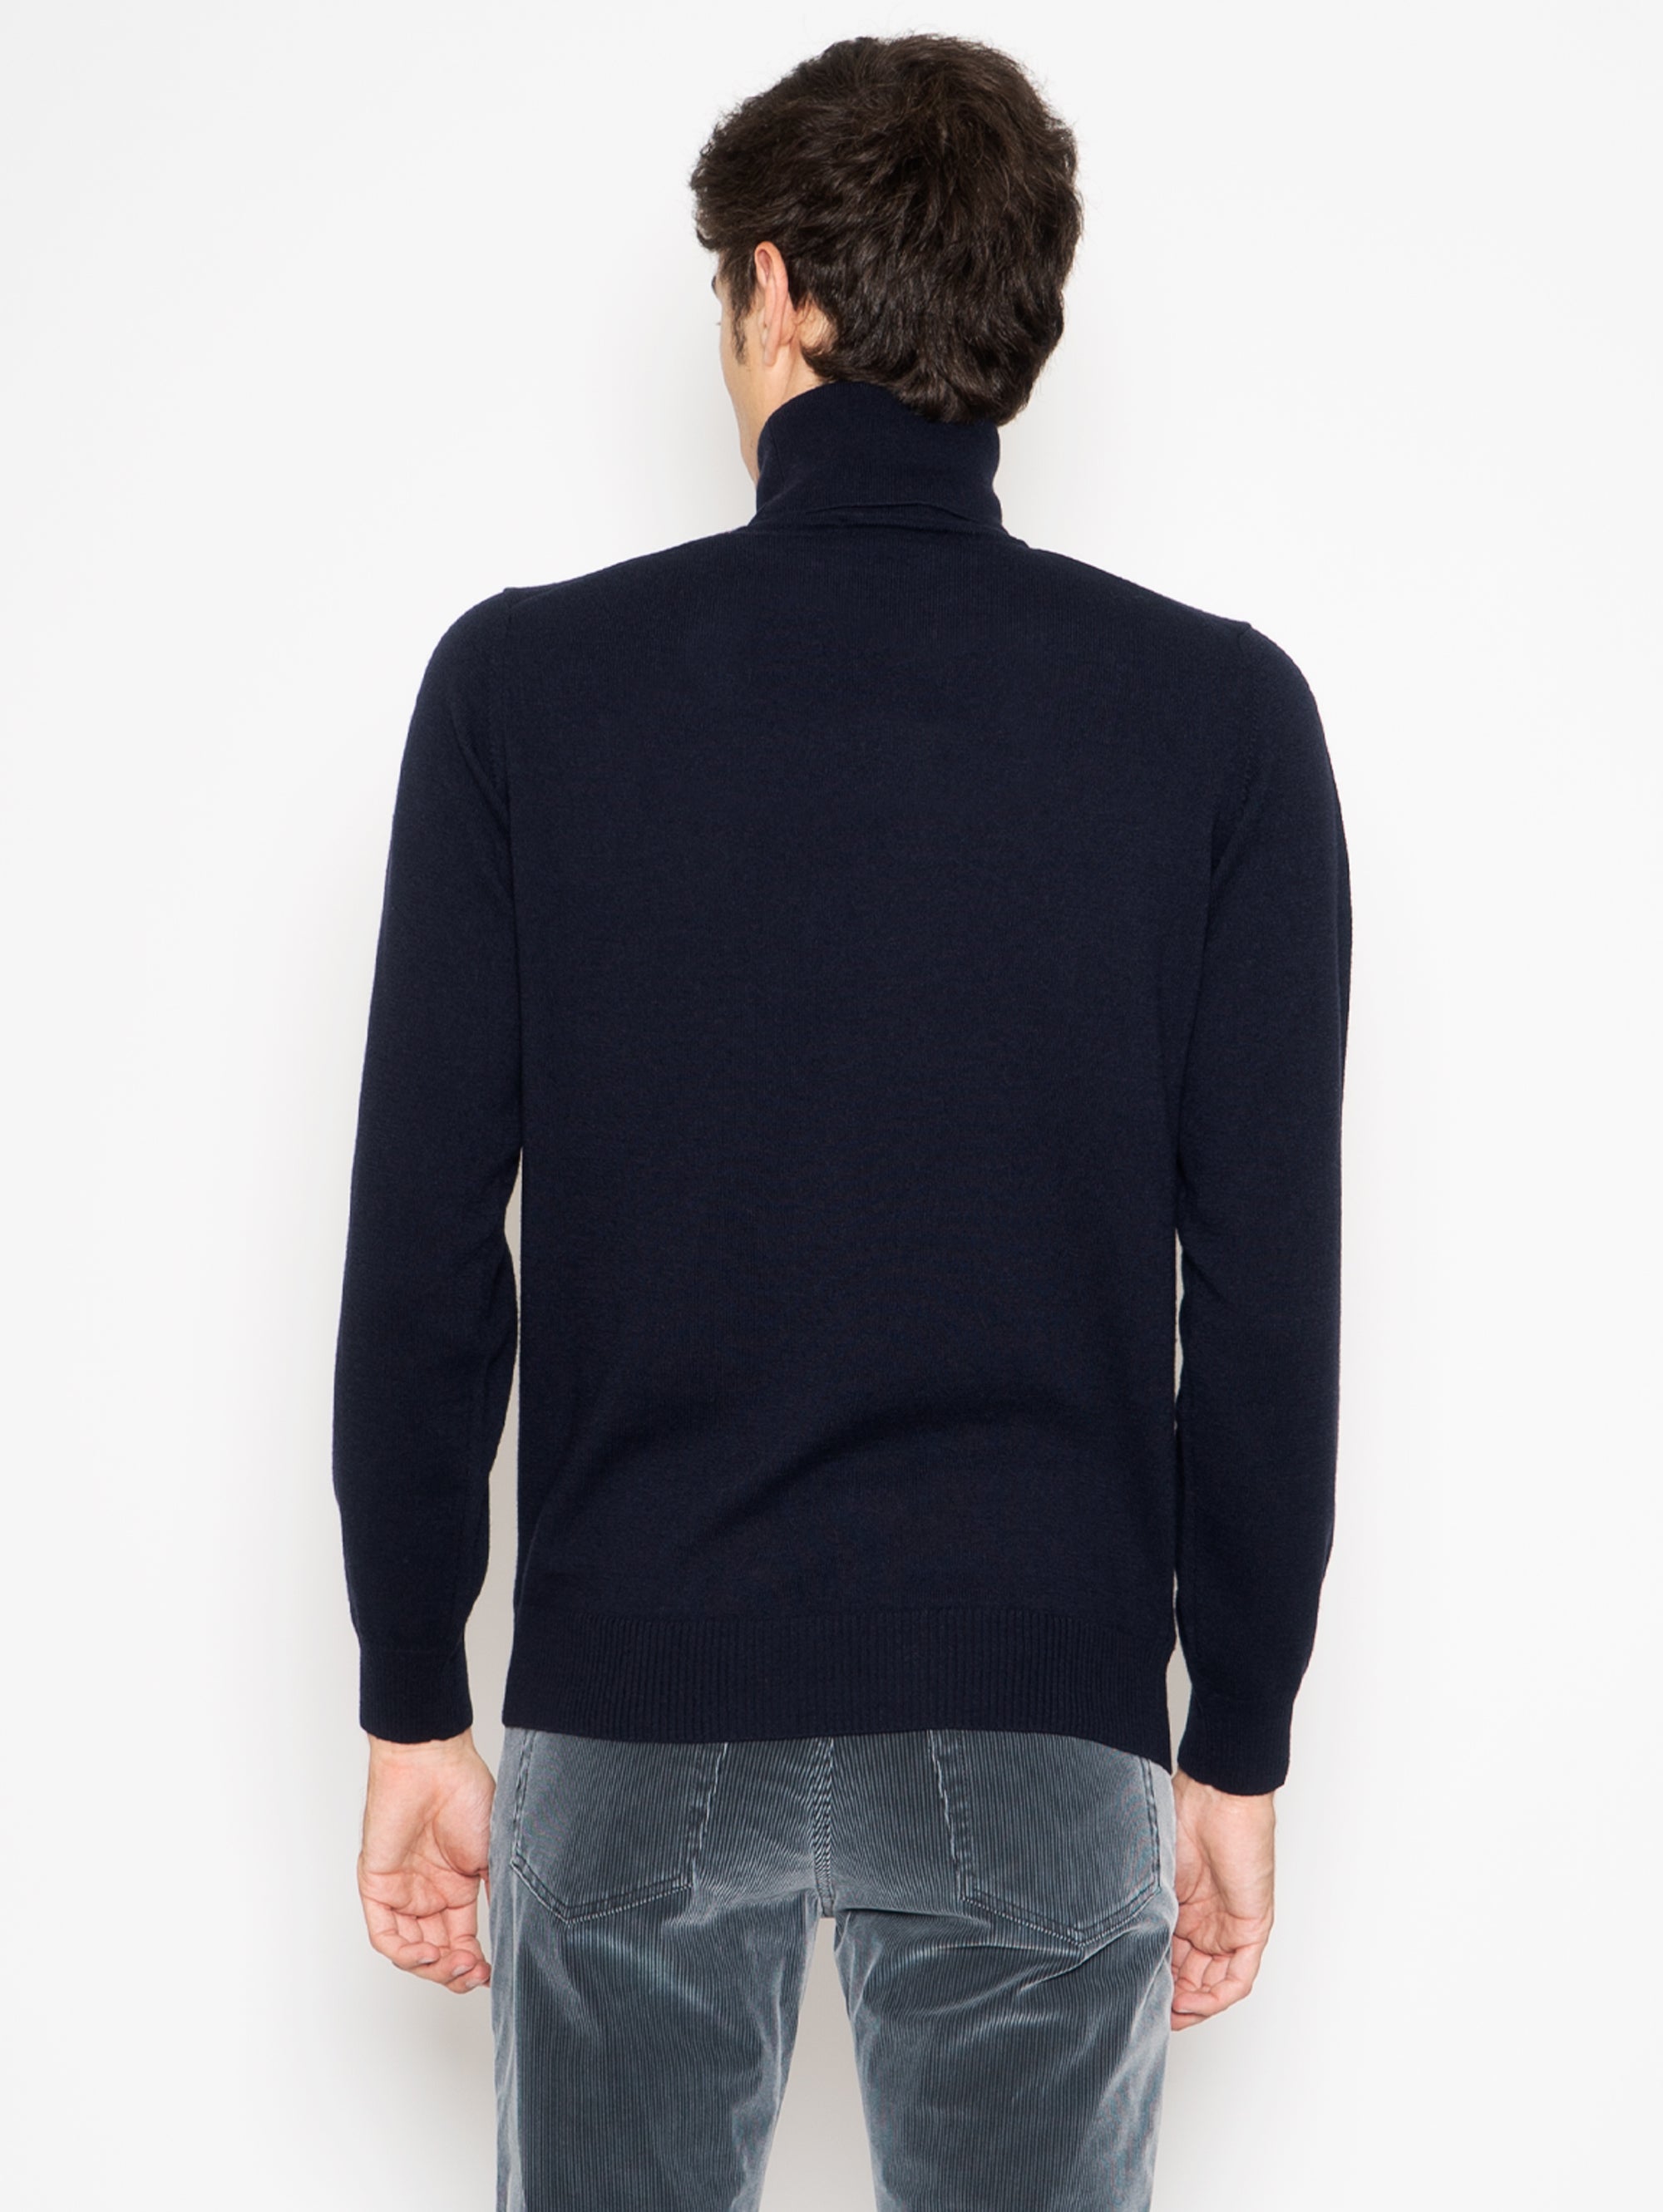 Blauer Pullover mit hohem Kragen